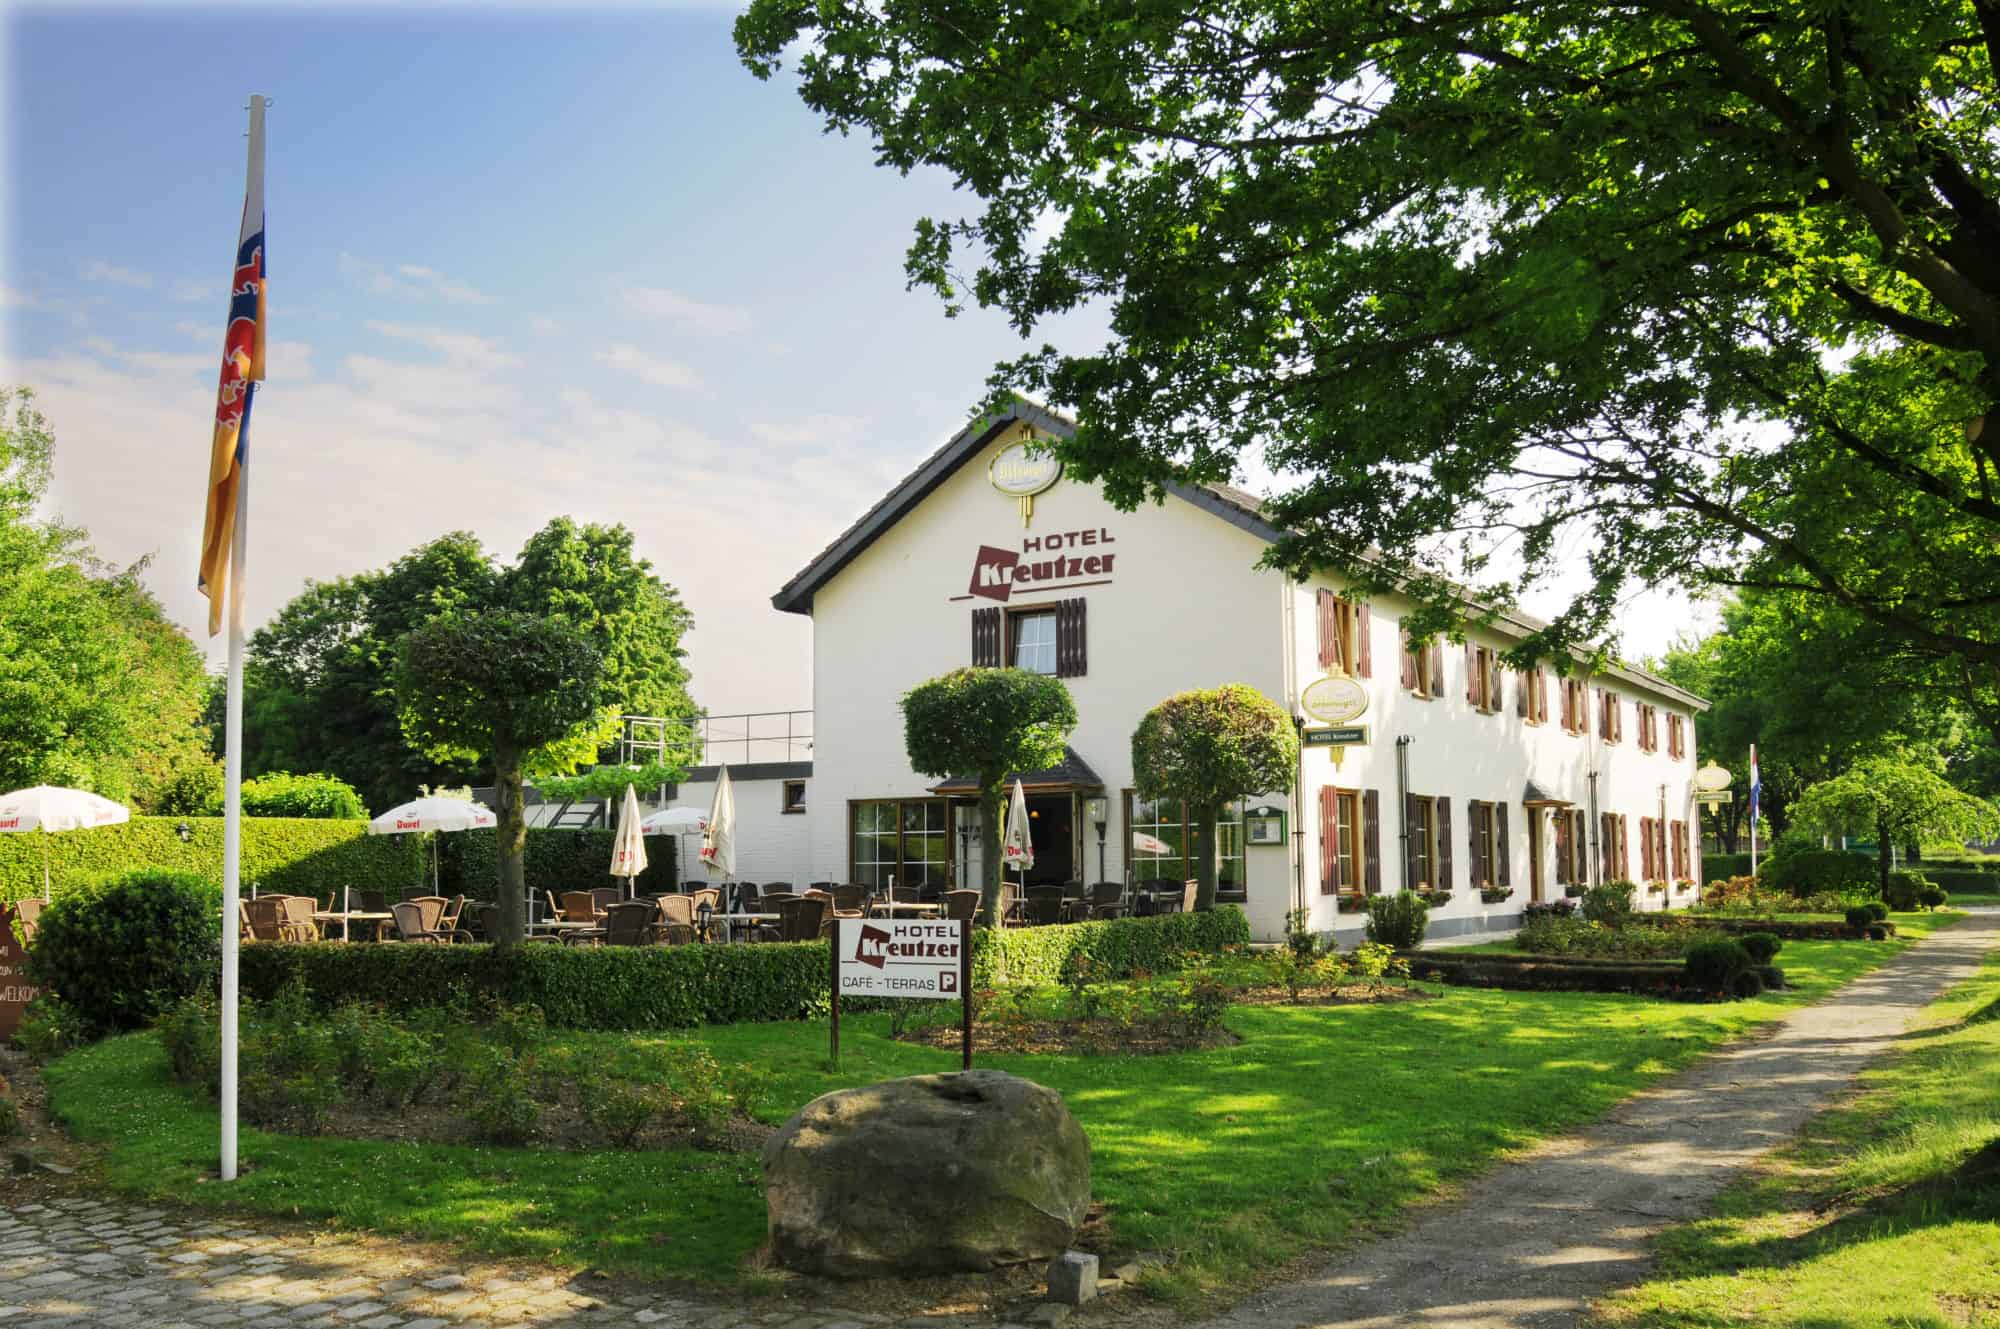 Hotel Kreutzer in Heijenrath, Limburg